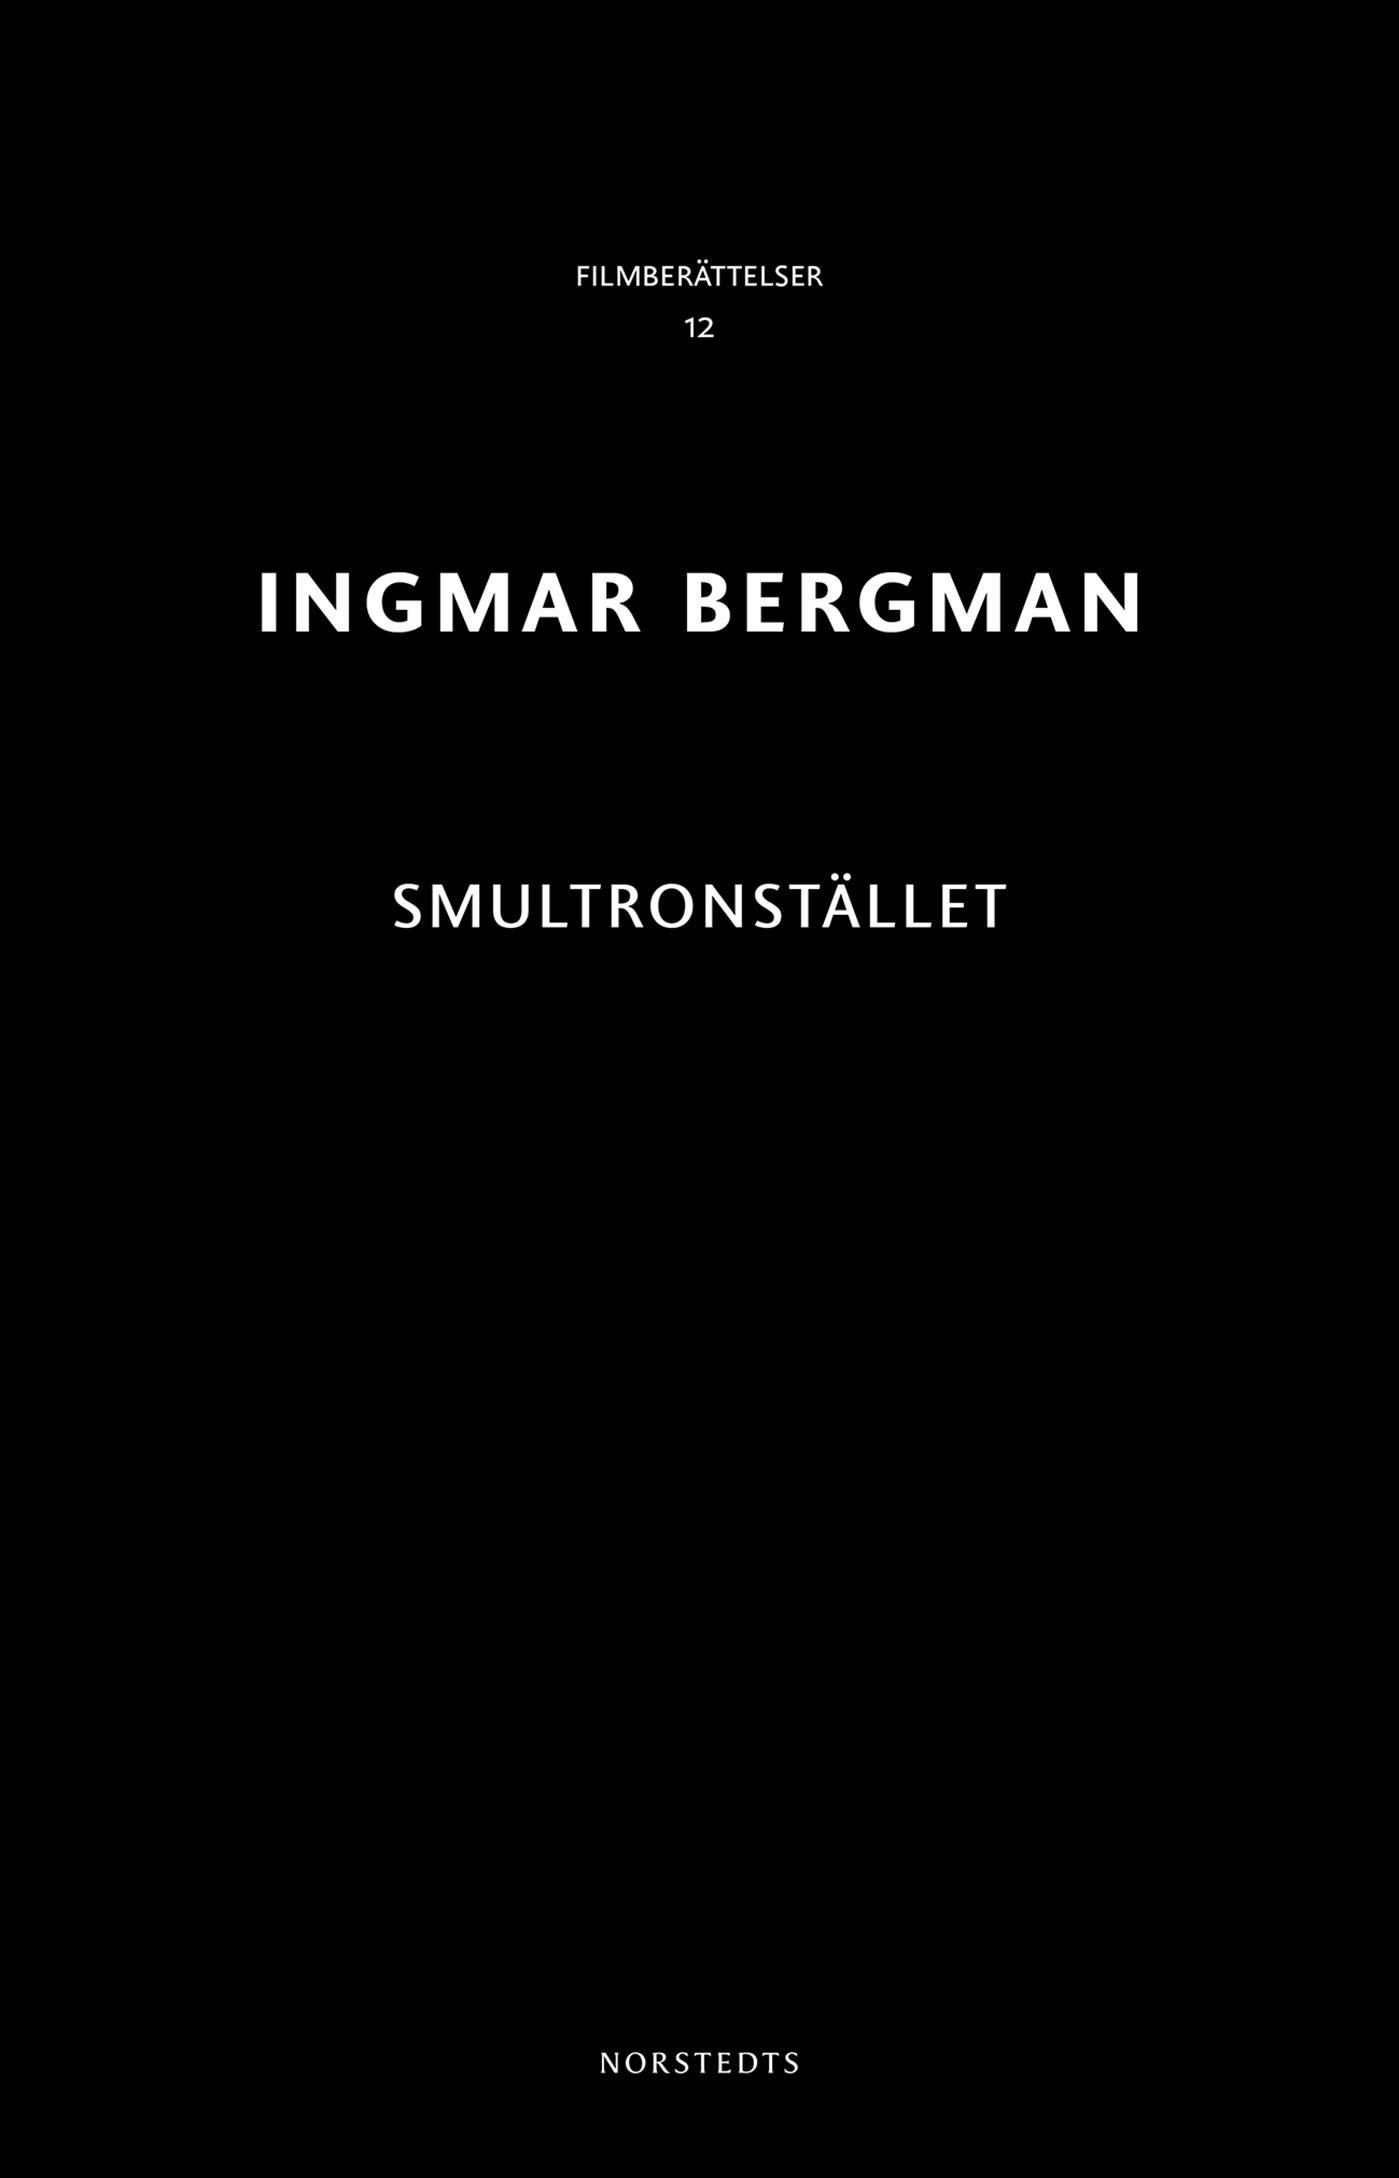 Smultronstället - Ingmar Bergman